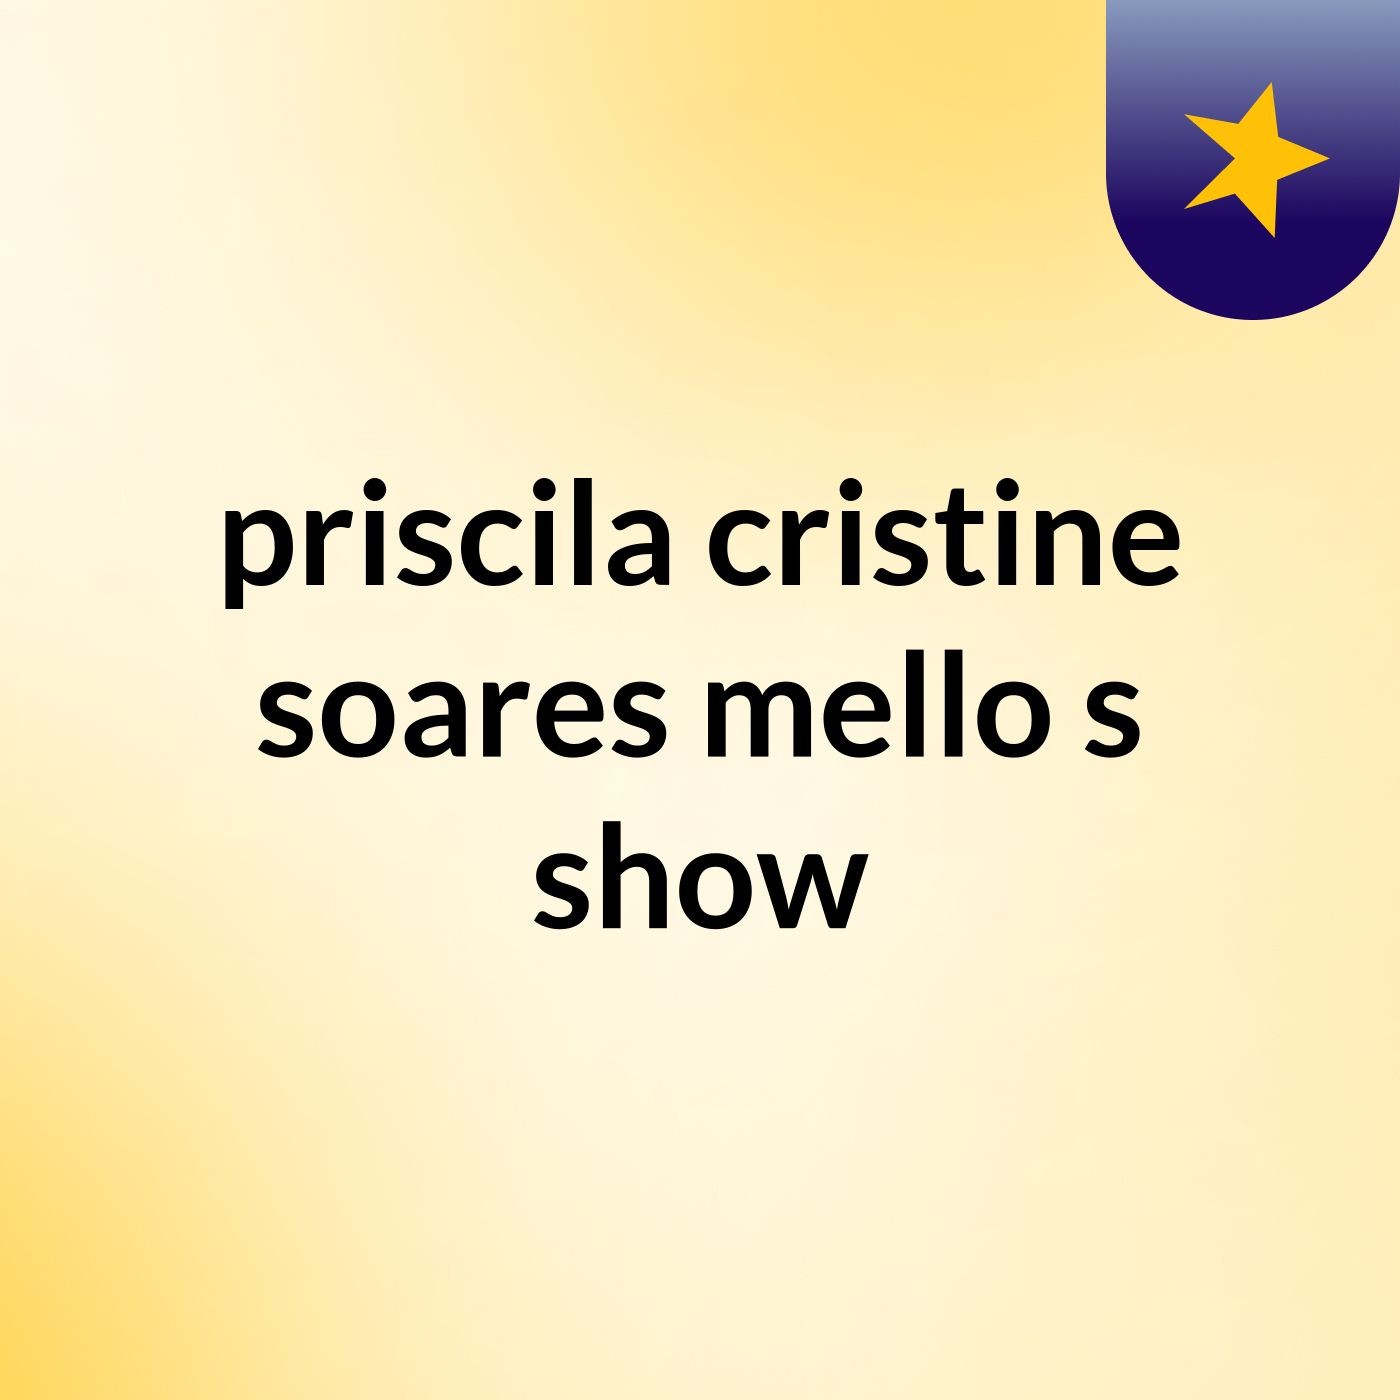 priscila cristine soares mello's show